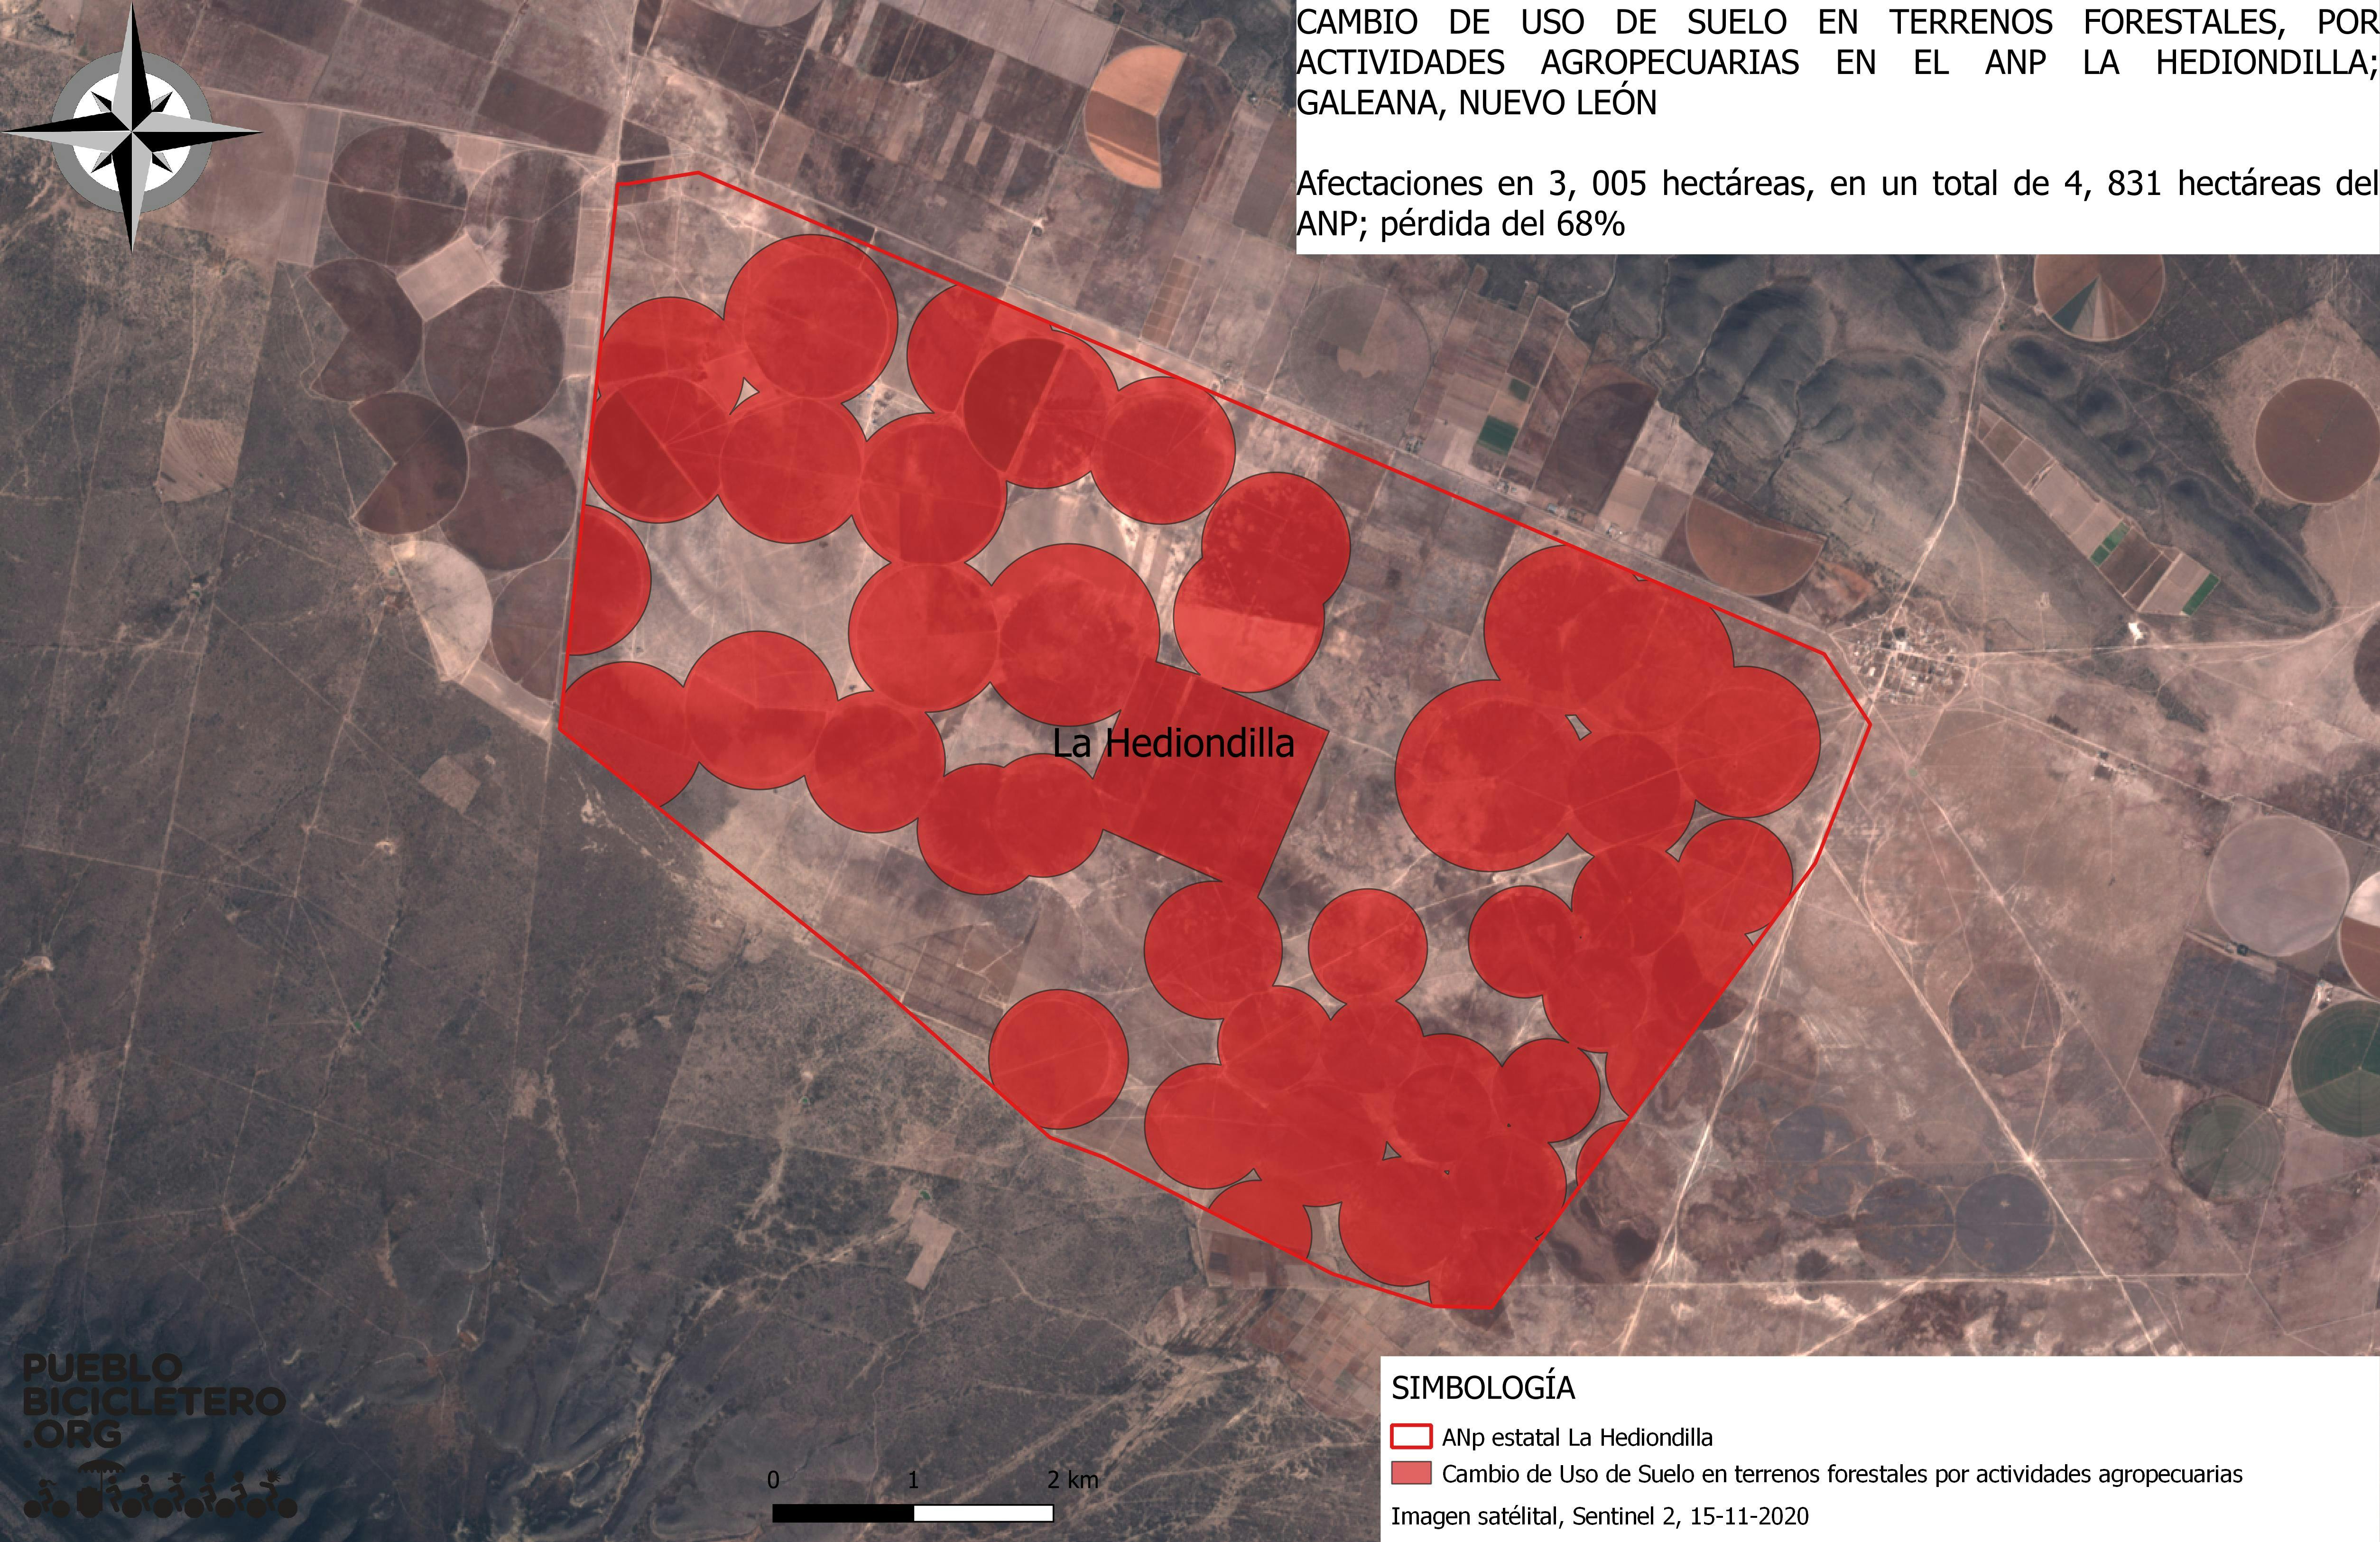 Mapa que muestra las afectaciones en el área natural protegida de La Hediondilla.